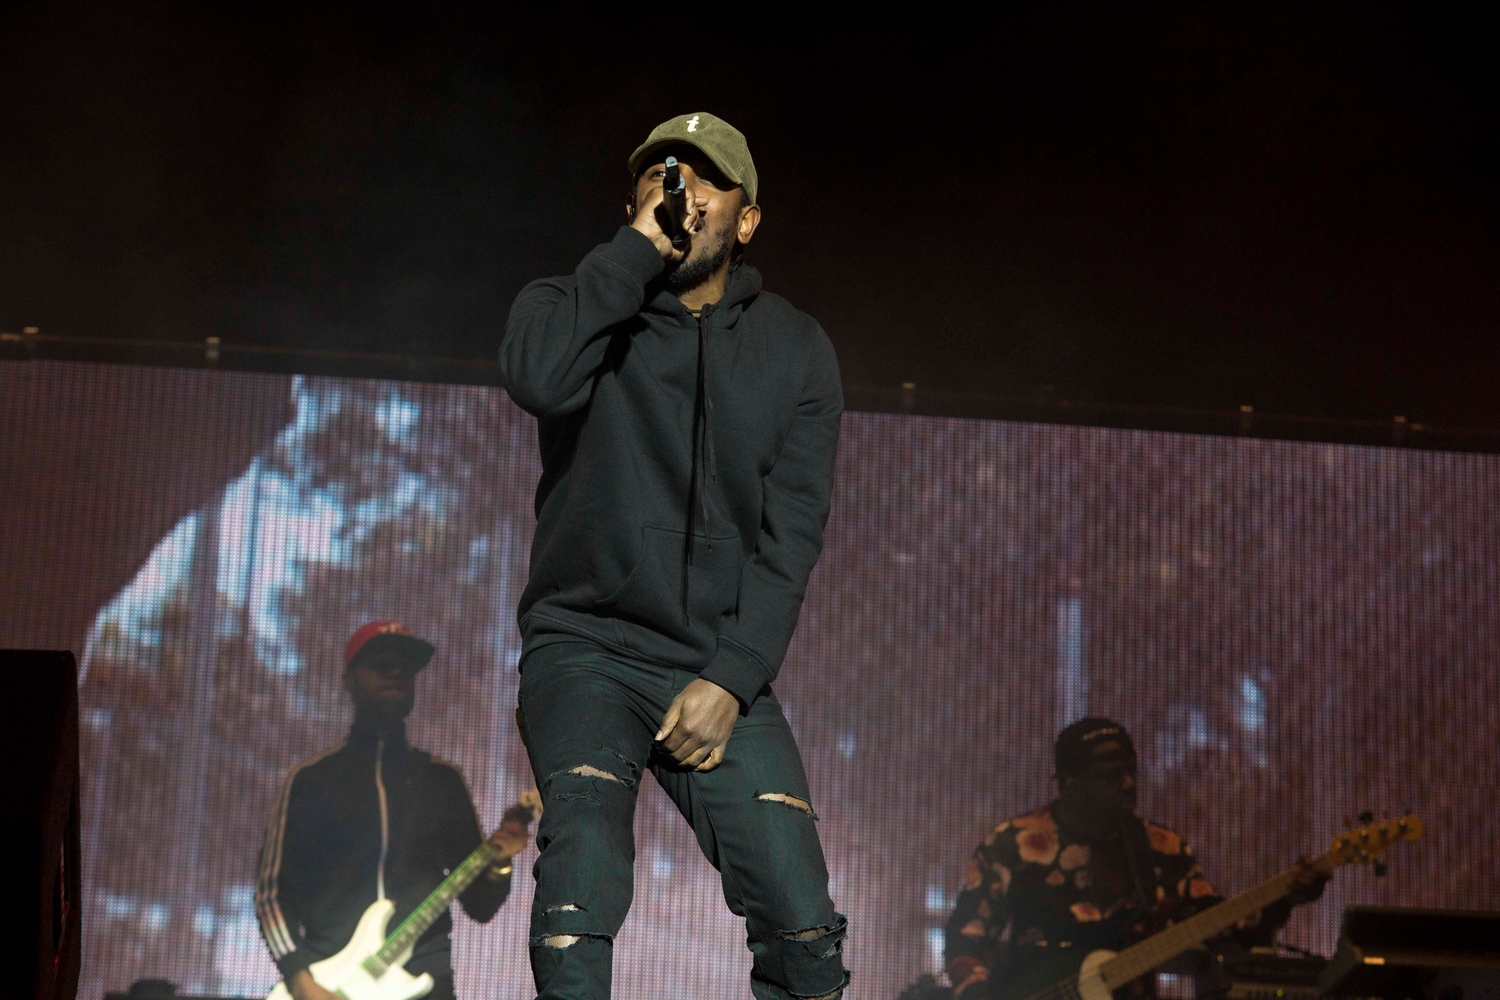 Kendrick Lamar gives a headliner performance at Reading 2015